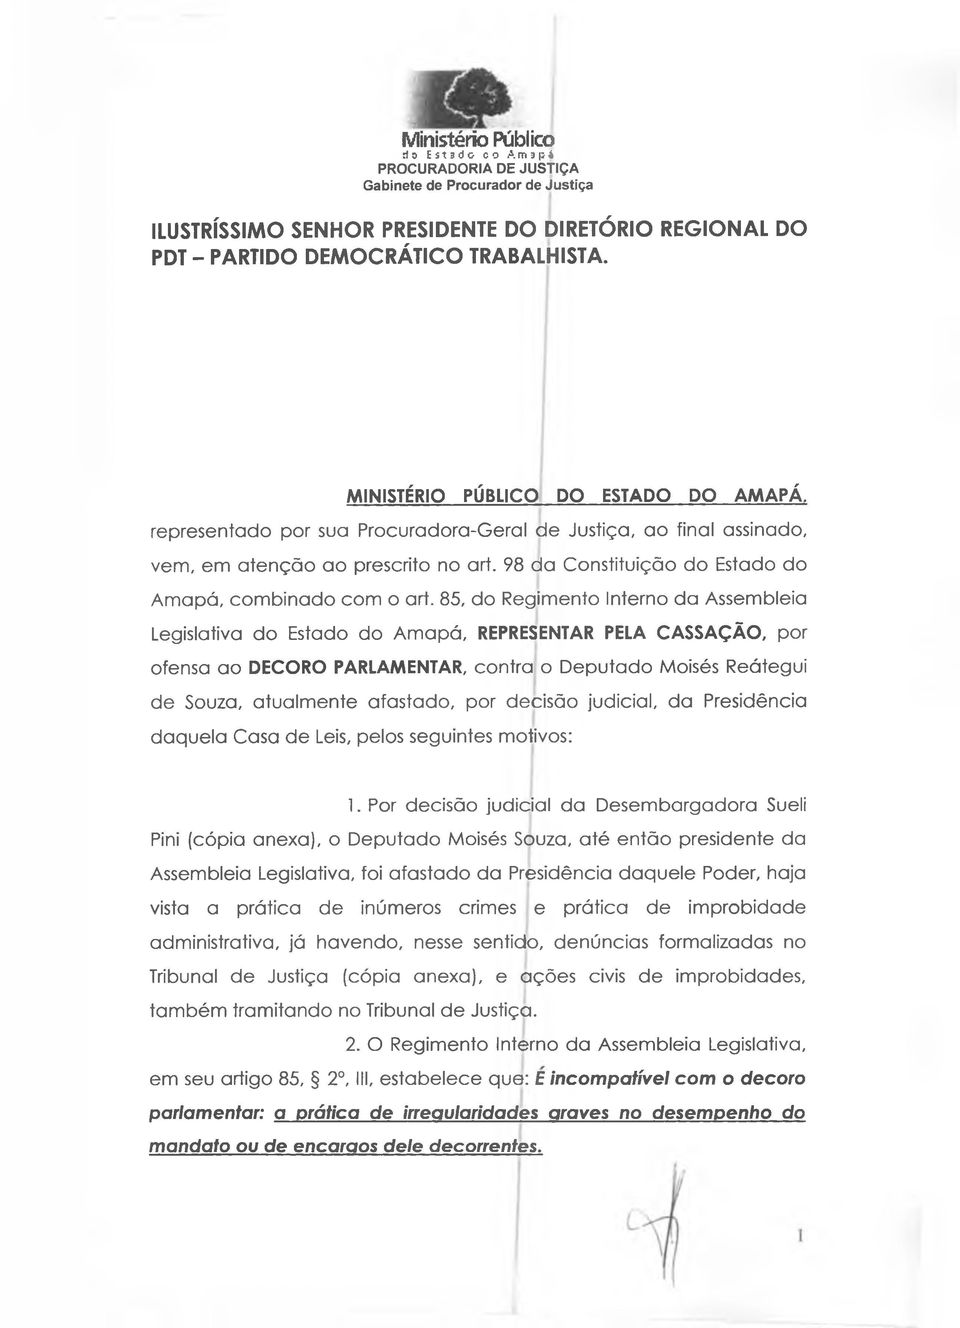 85, do Regimento Interno da Assembleia Legislativa do Estado do Amapá, REPRESENTAR PELA CASSAÇÃO, por ofensa ao DECORO PARLAMENTAR, contra o Deputado Moisés Reátegui de Souza, atualmente afastado,